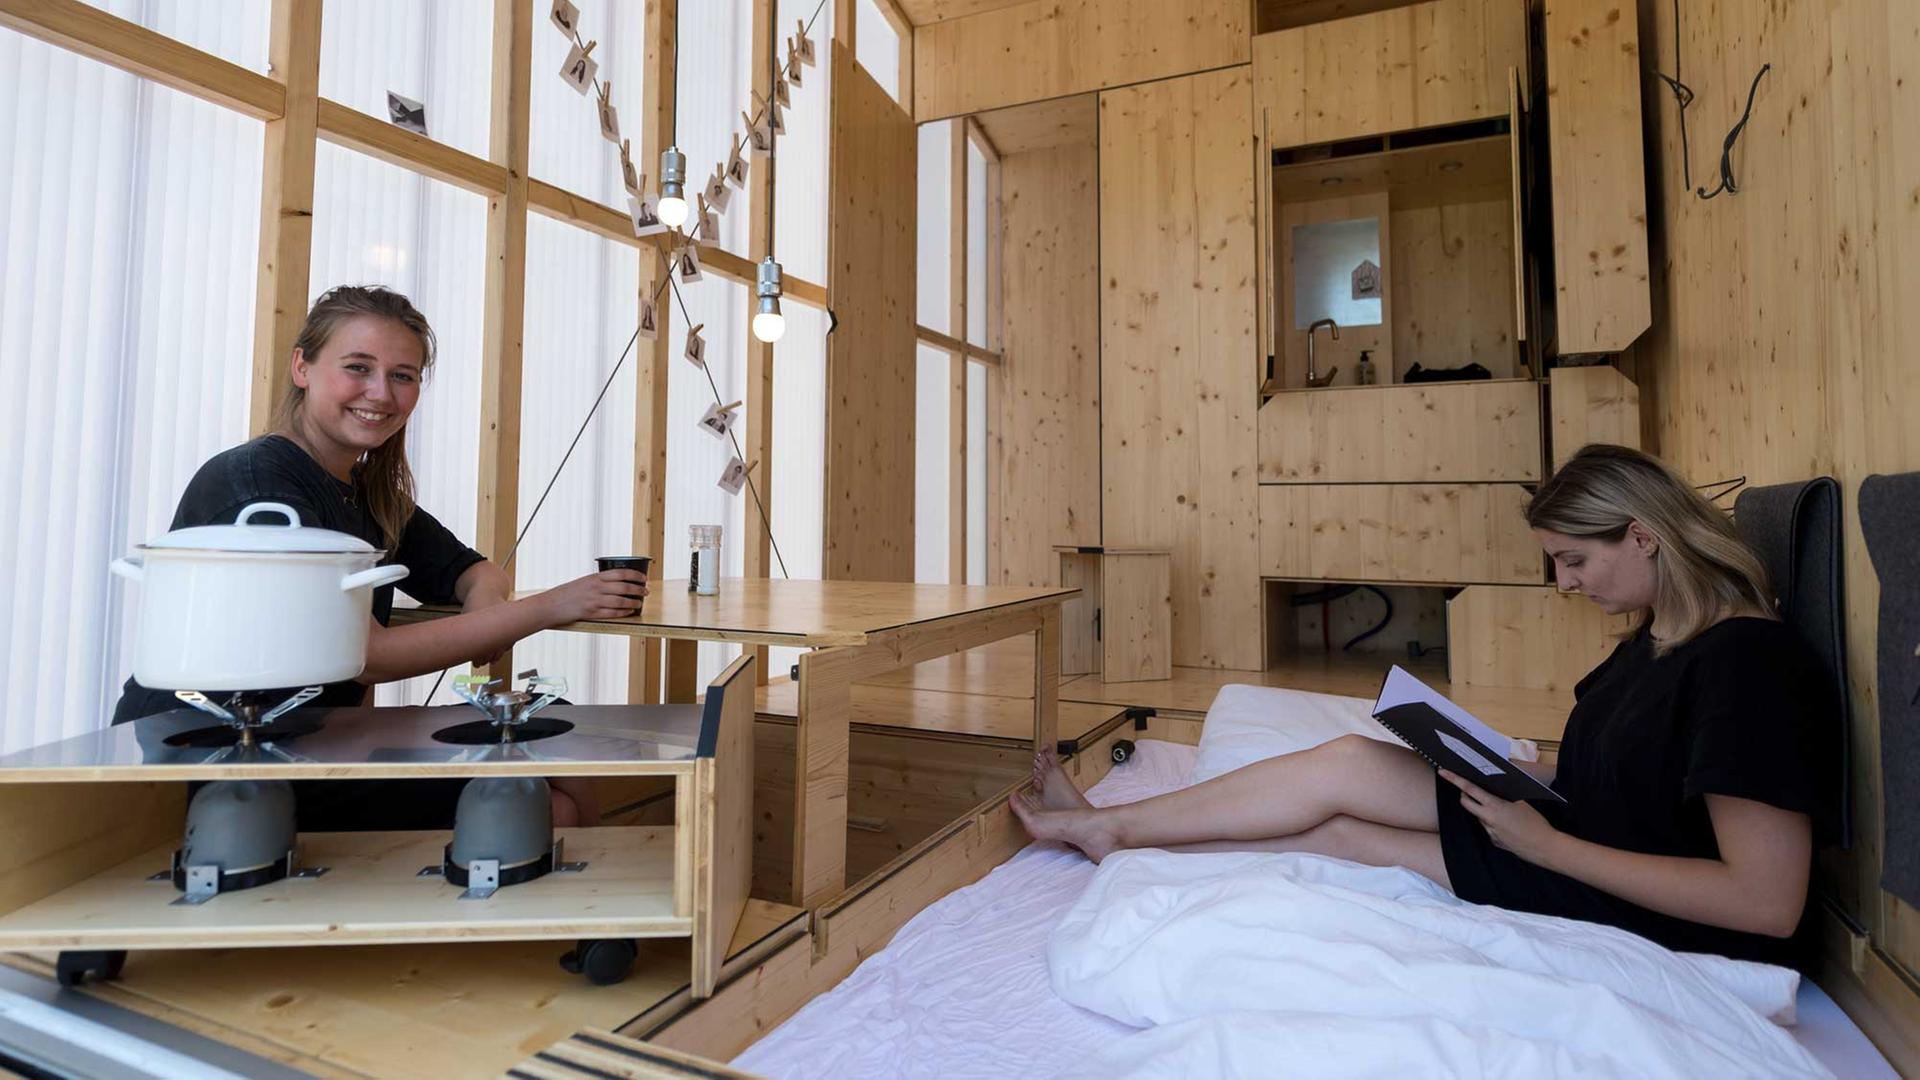 Architekturstudentinnen Sarah Ullmayer (r) und Sophie Kany sitzen am 20.07.2017 im Bauhaus Campus in Berlin in dem von ihnen entworfenen Tiny Haus (Minihaus) "35KubikHeimat".